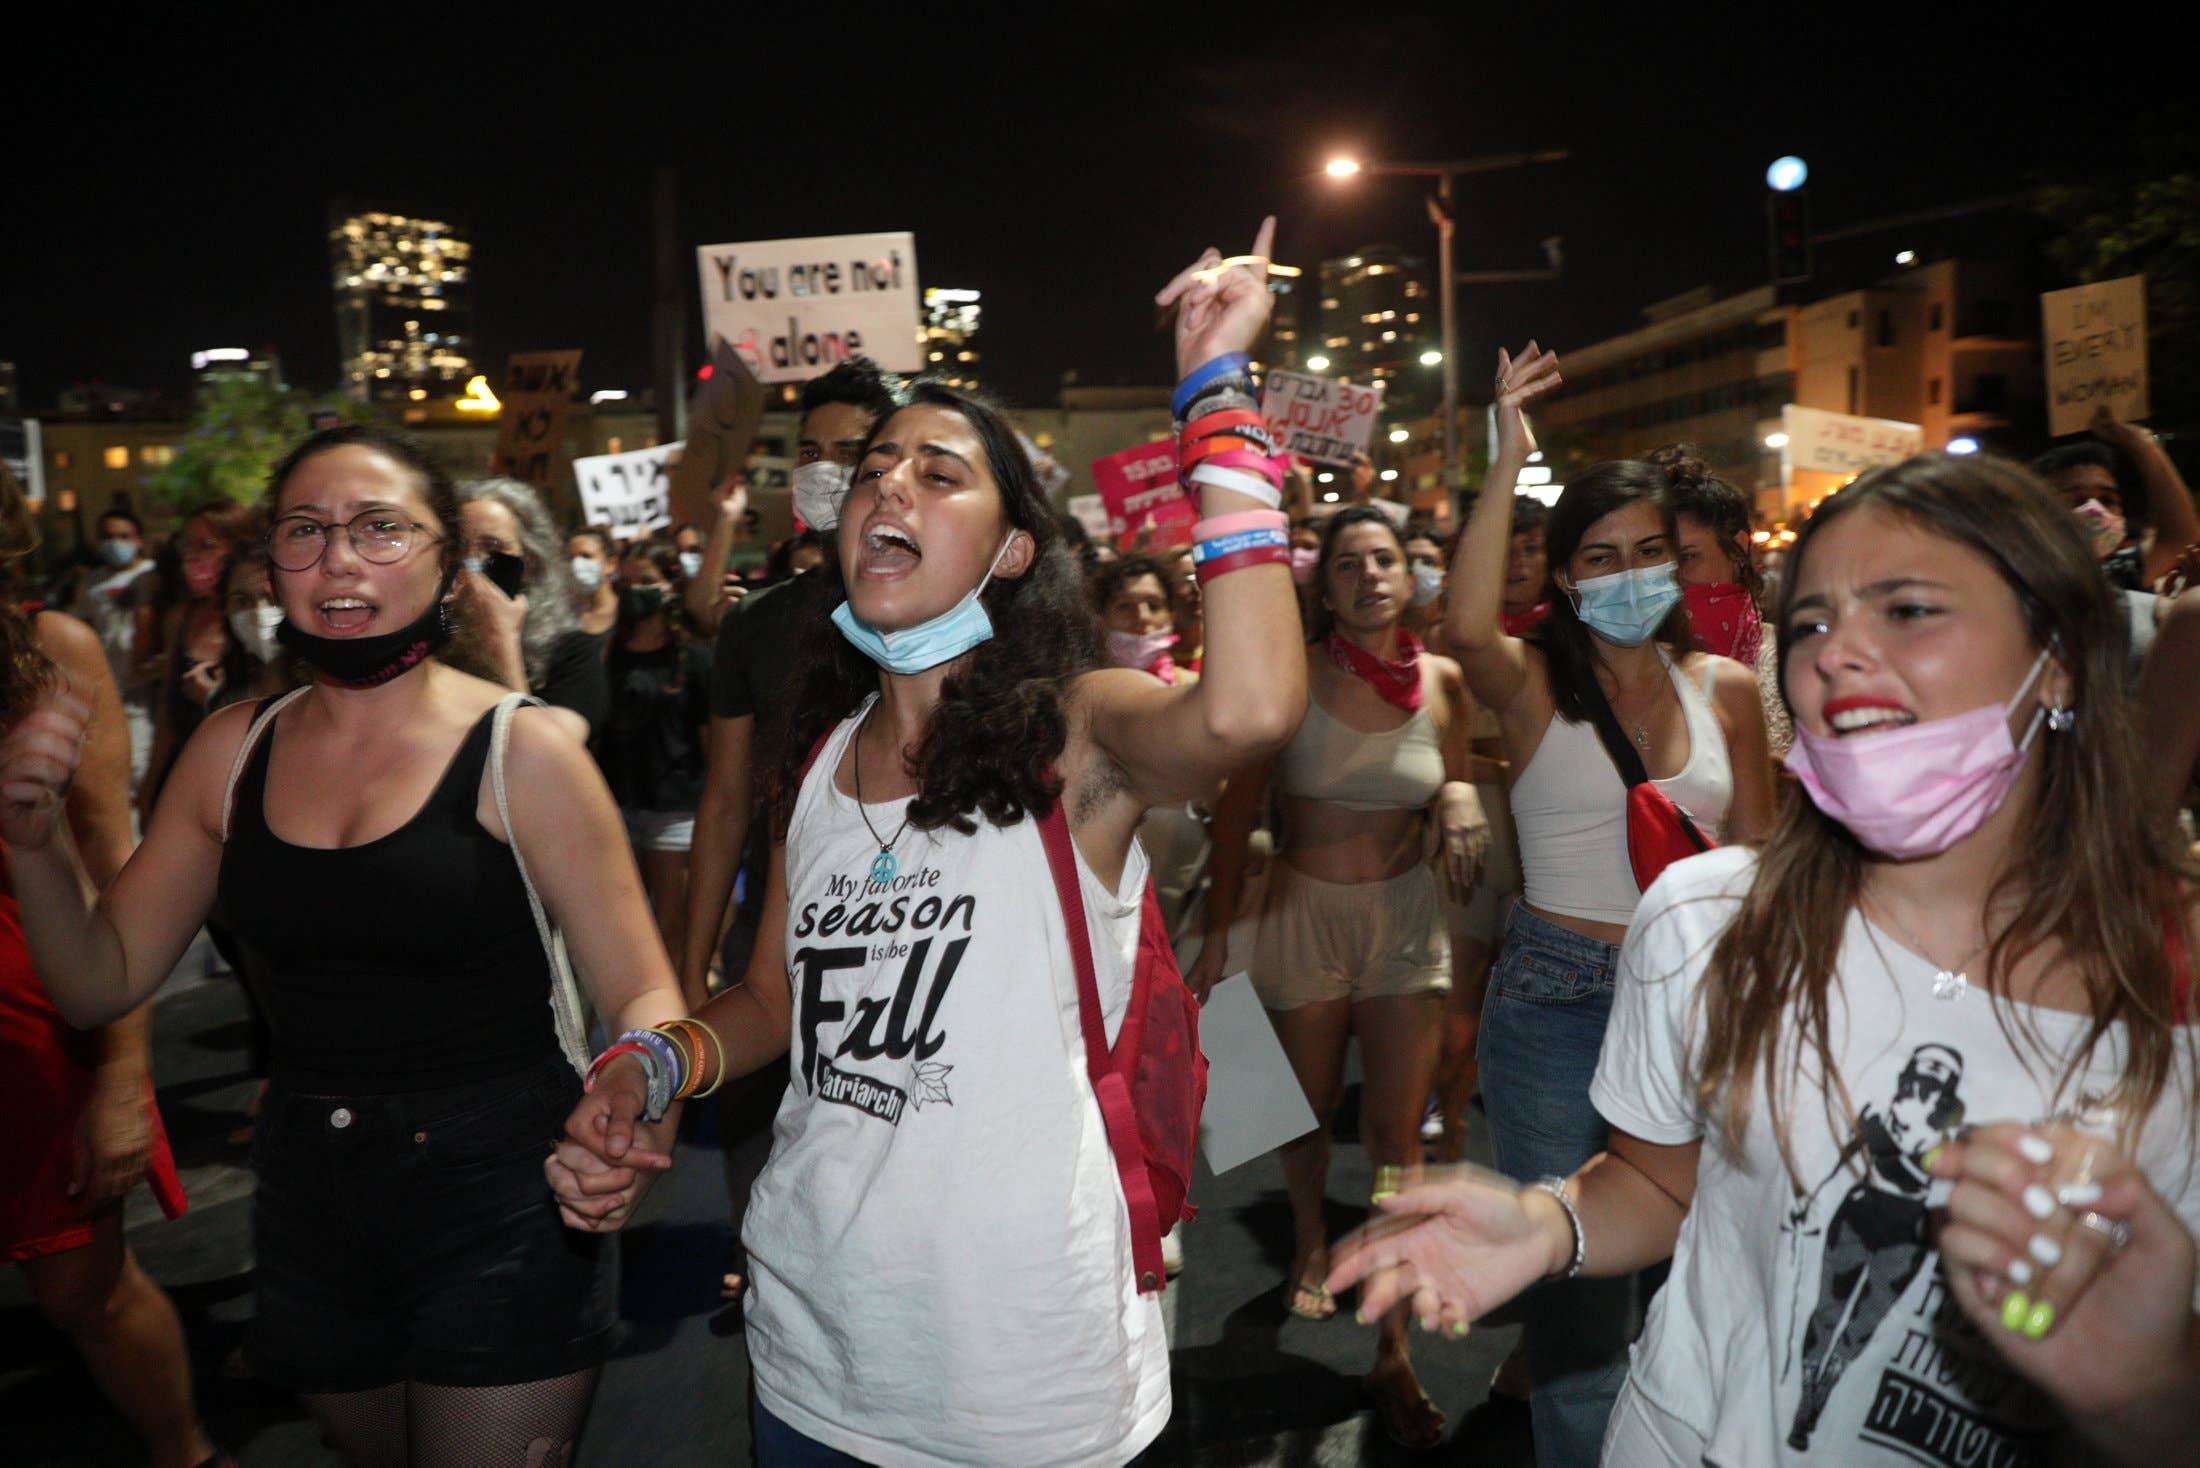 इजराइल में युवती के साथ 30 लोगों ने किया सामूहिक दुष्कर्म, विरोध में लोगों का प्रदर्शन